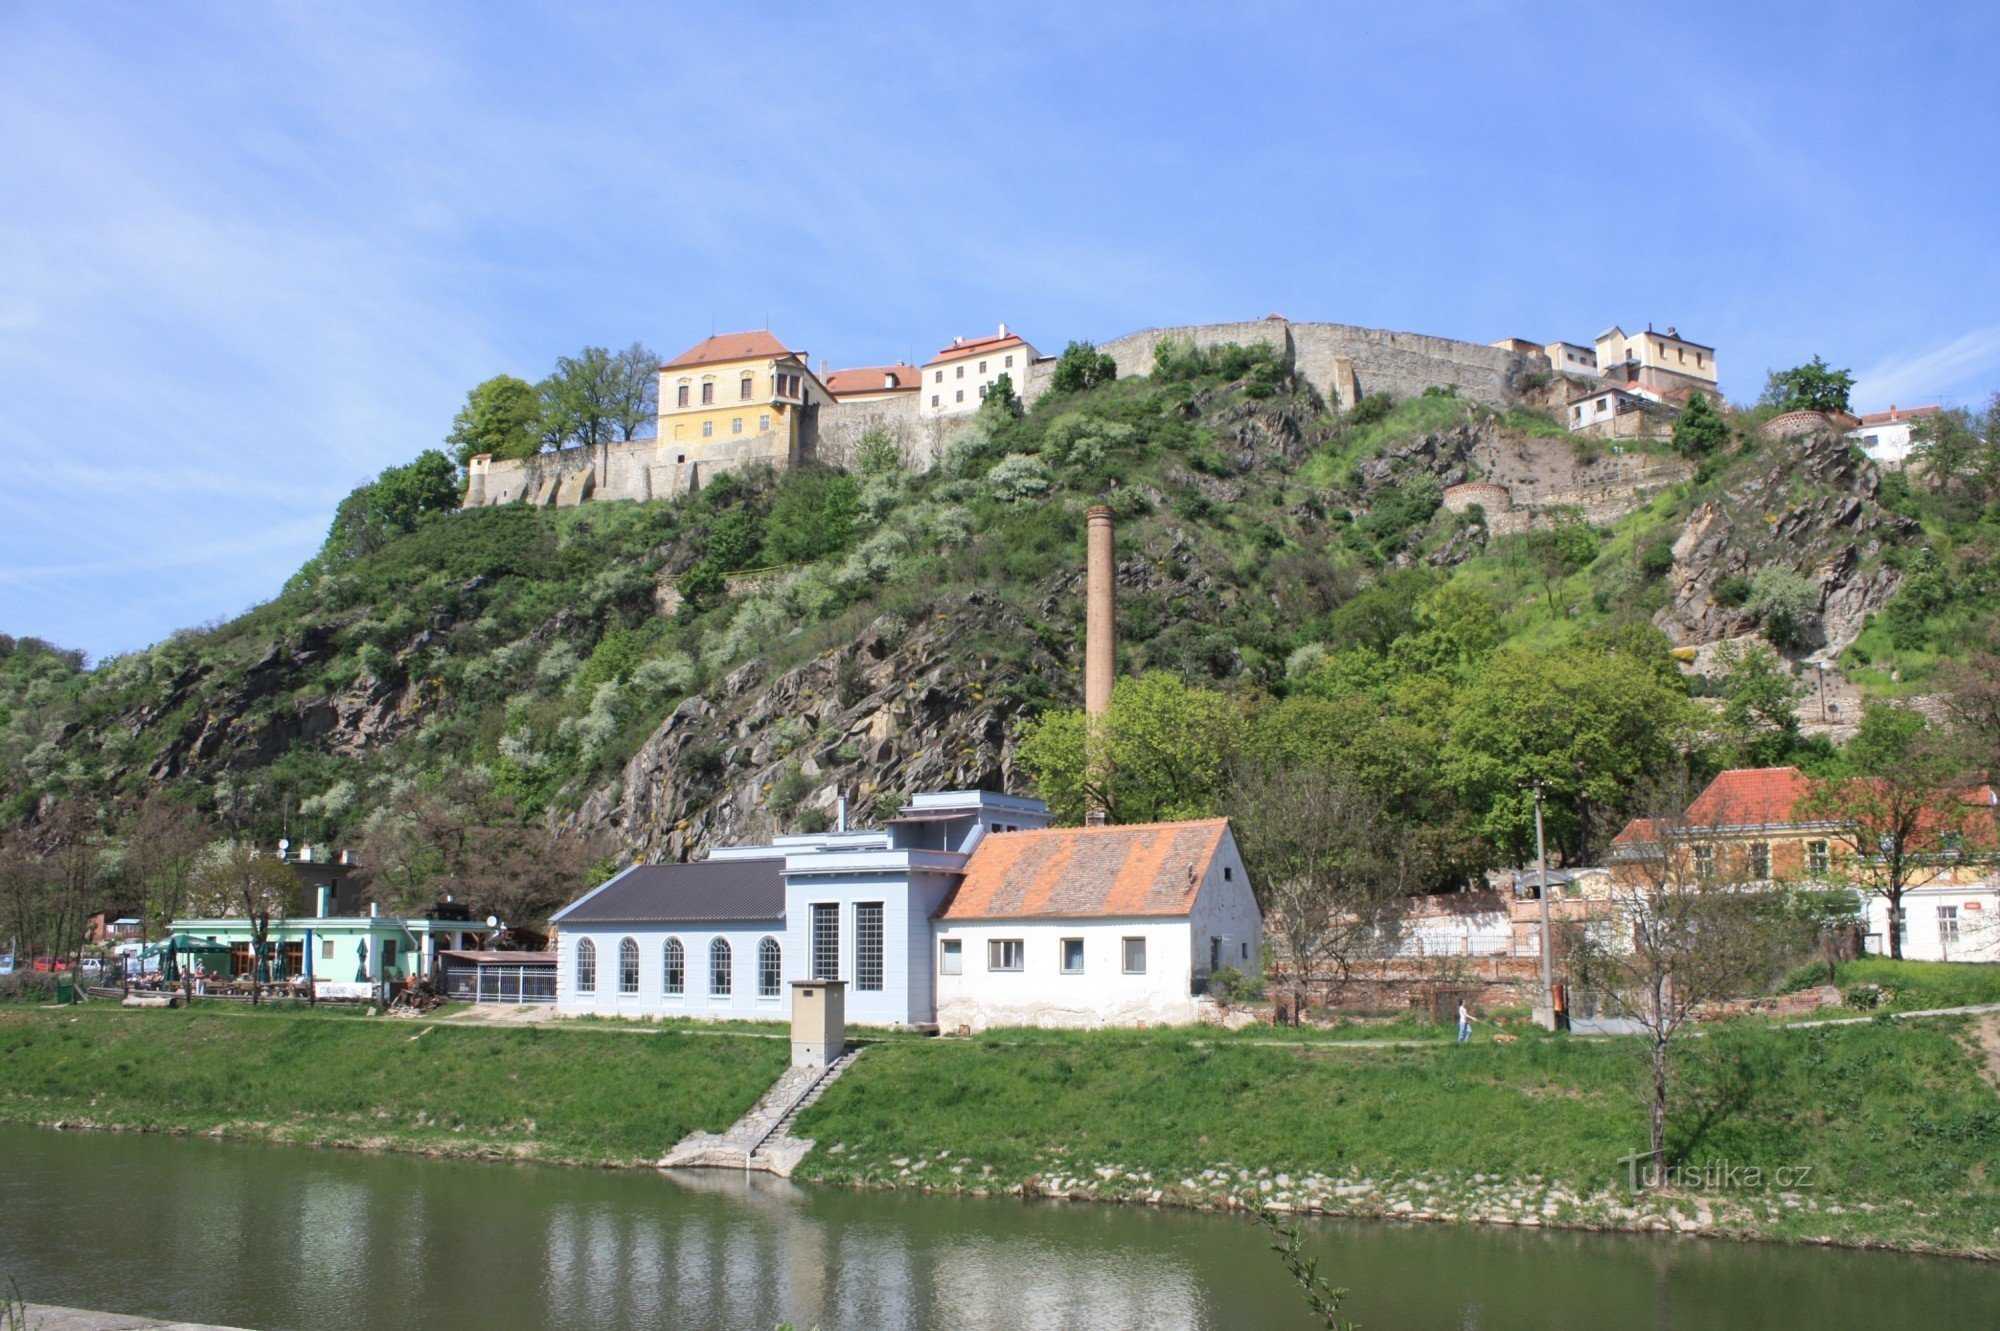 Une partie du quartier Dyjska avec le château